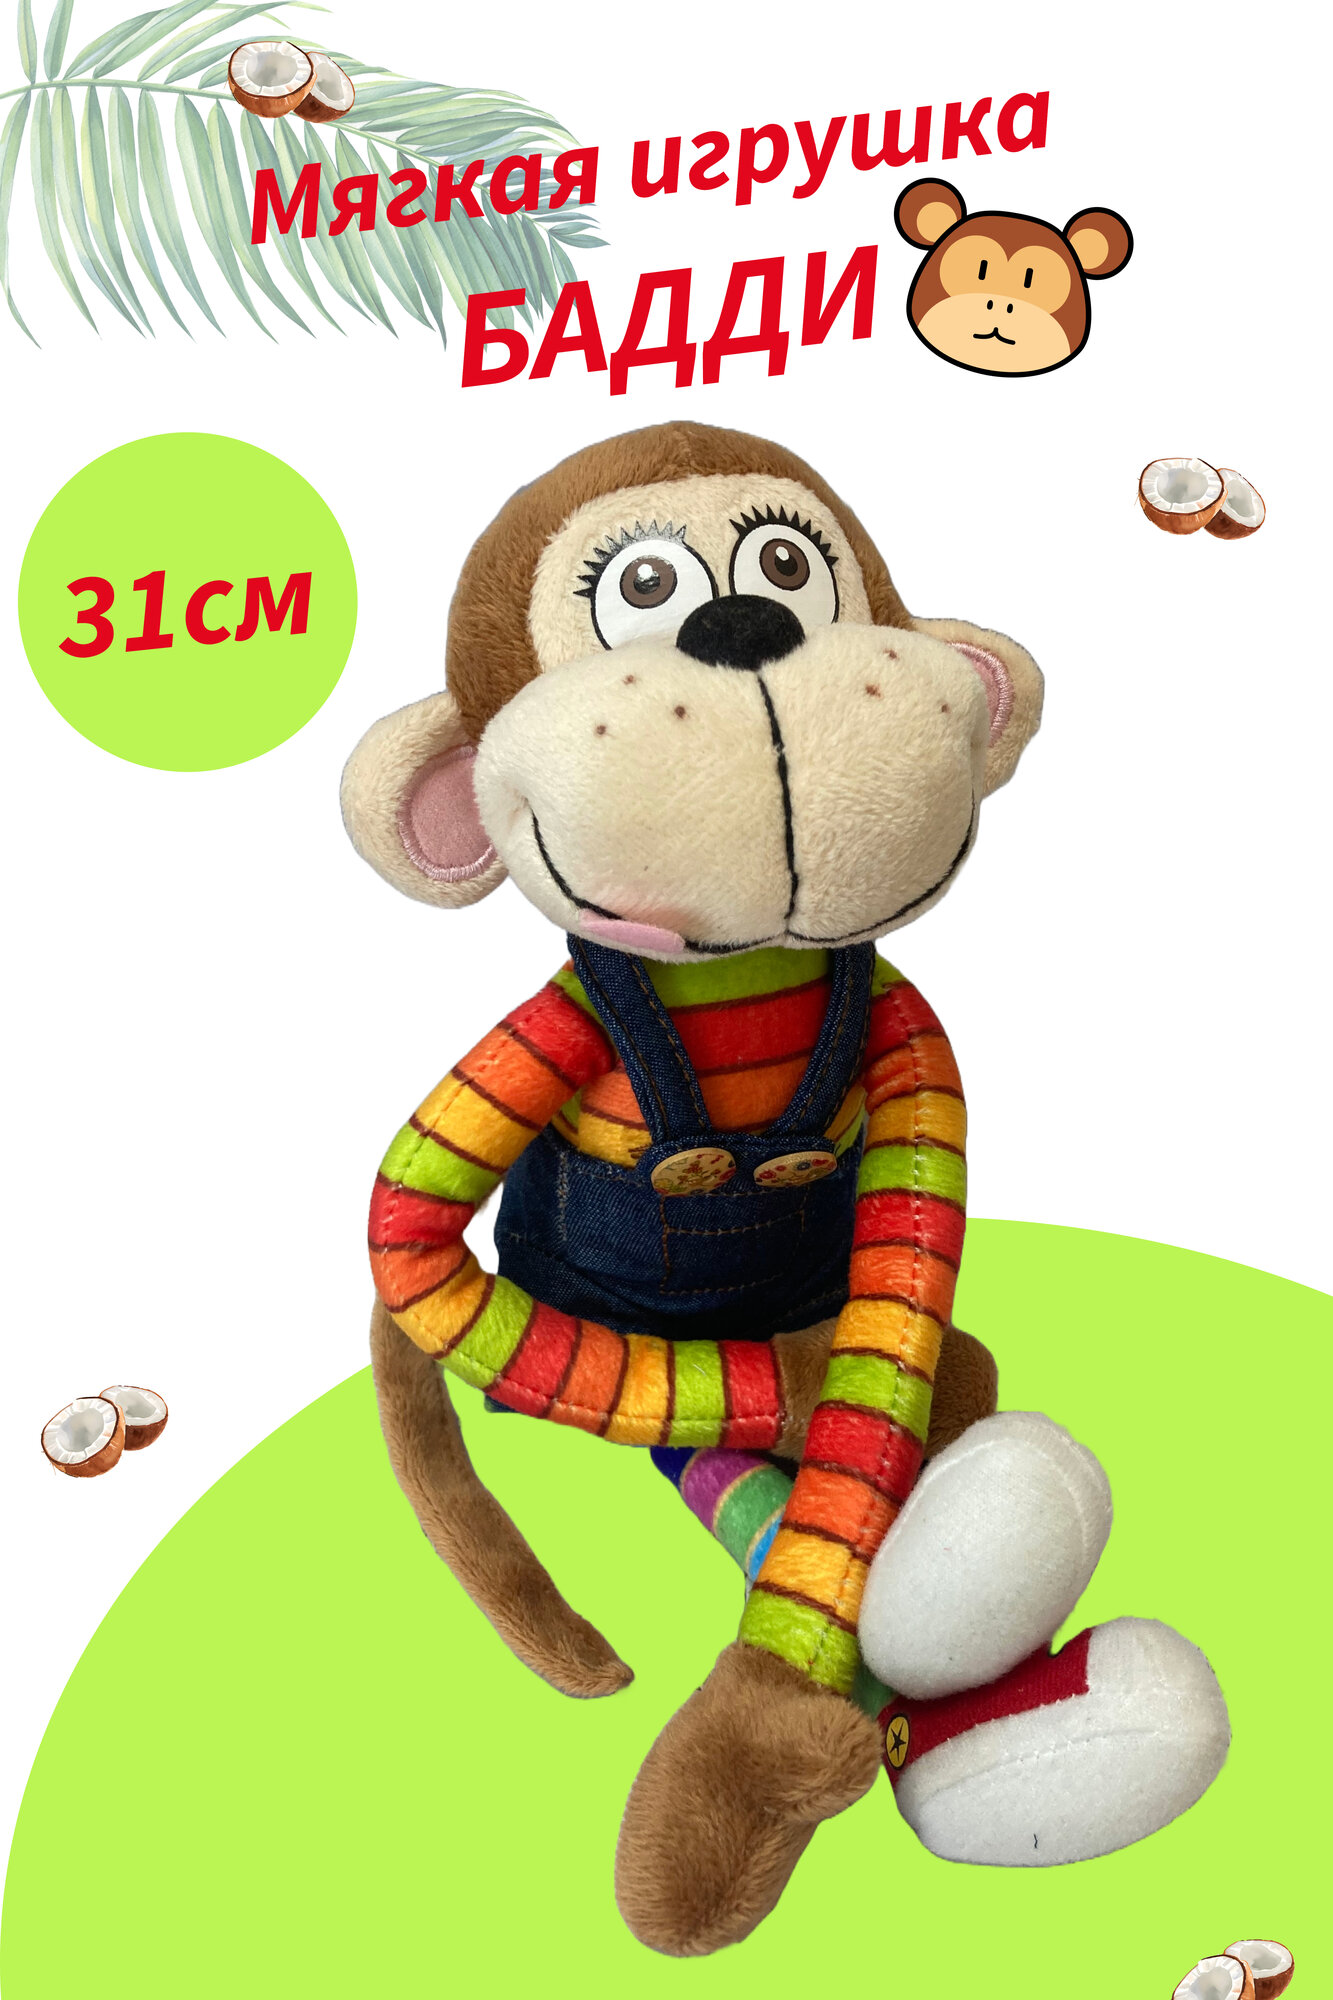 Мягкая игрушка обезьянка "Бадди middle" 31 см.